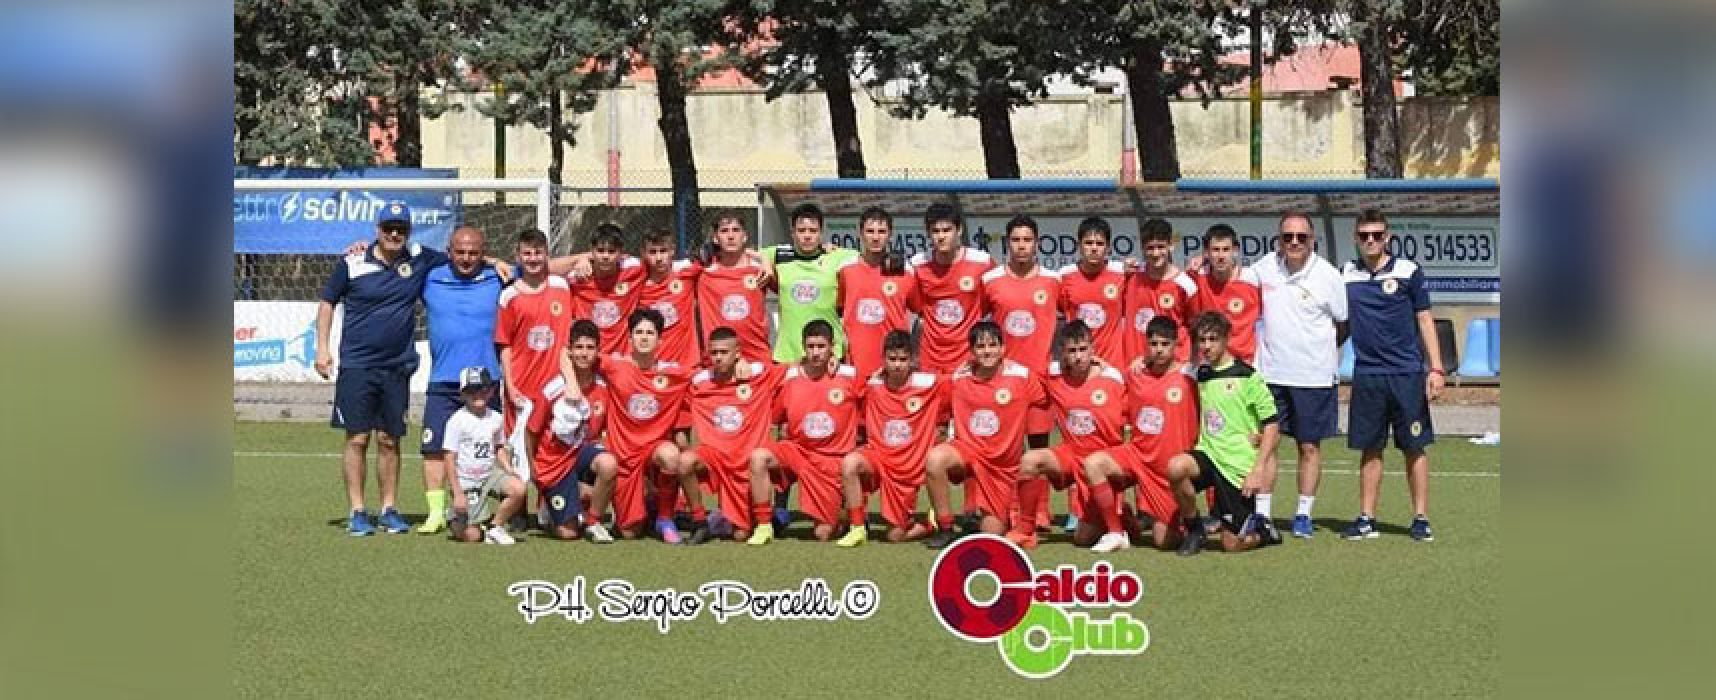 Calcio giovanile: il Real Bisceglie trionfa nel campionato Under 15